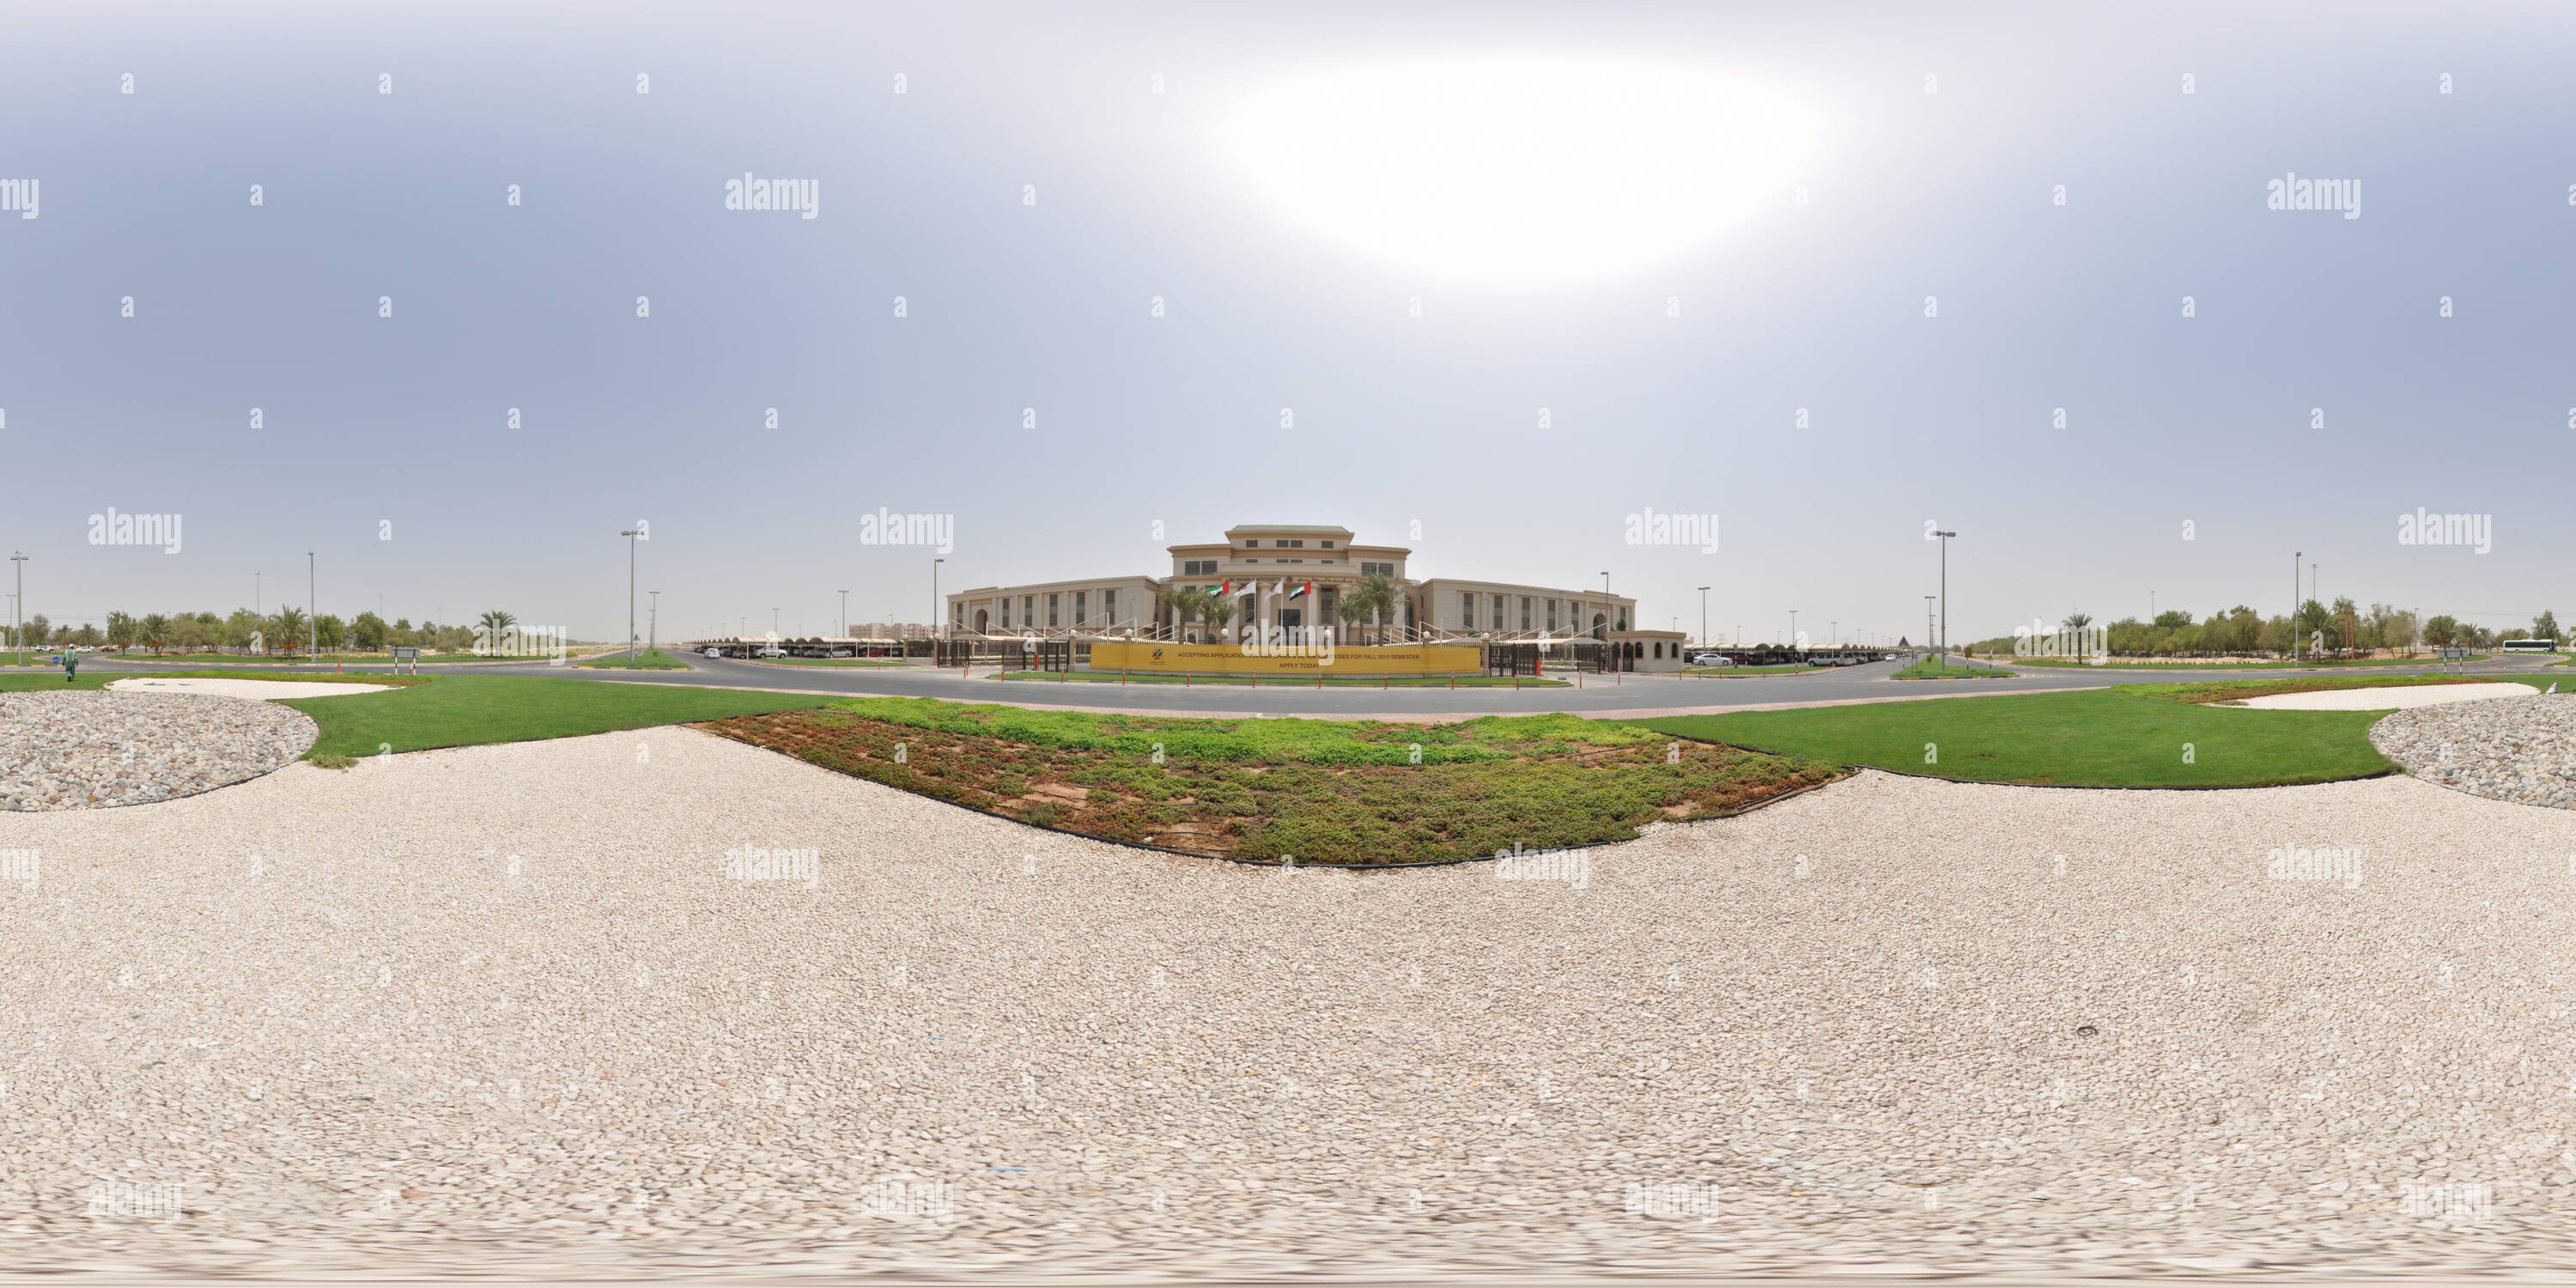 Visualizzazione panoramica a 360 gradi di Abu Dhabi University ( ADU )